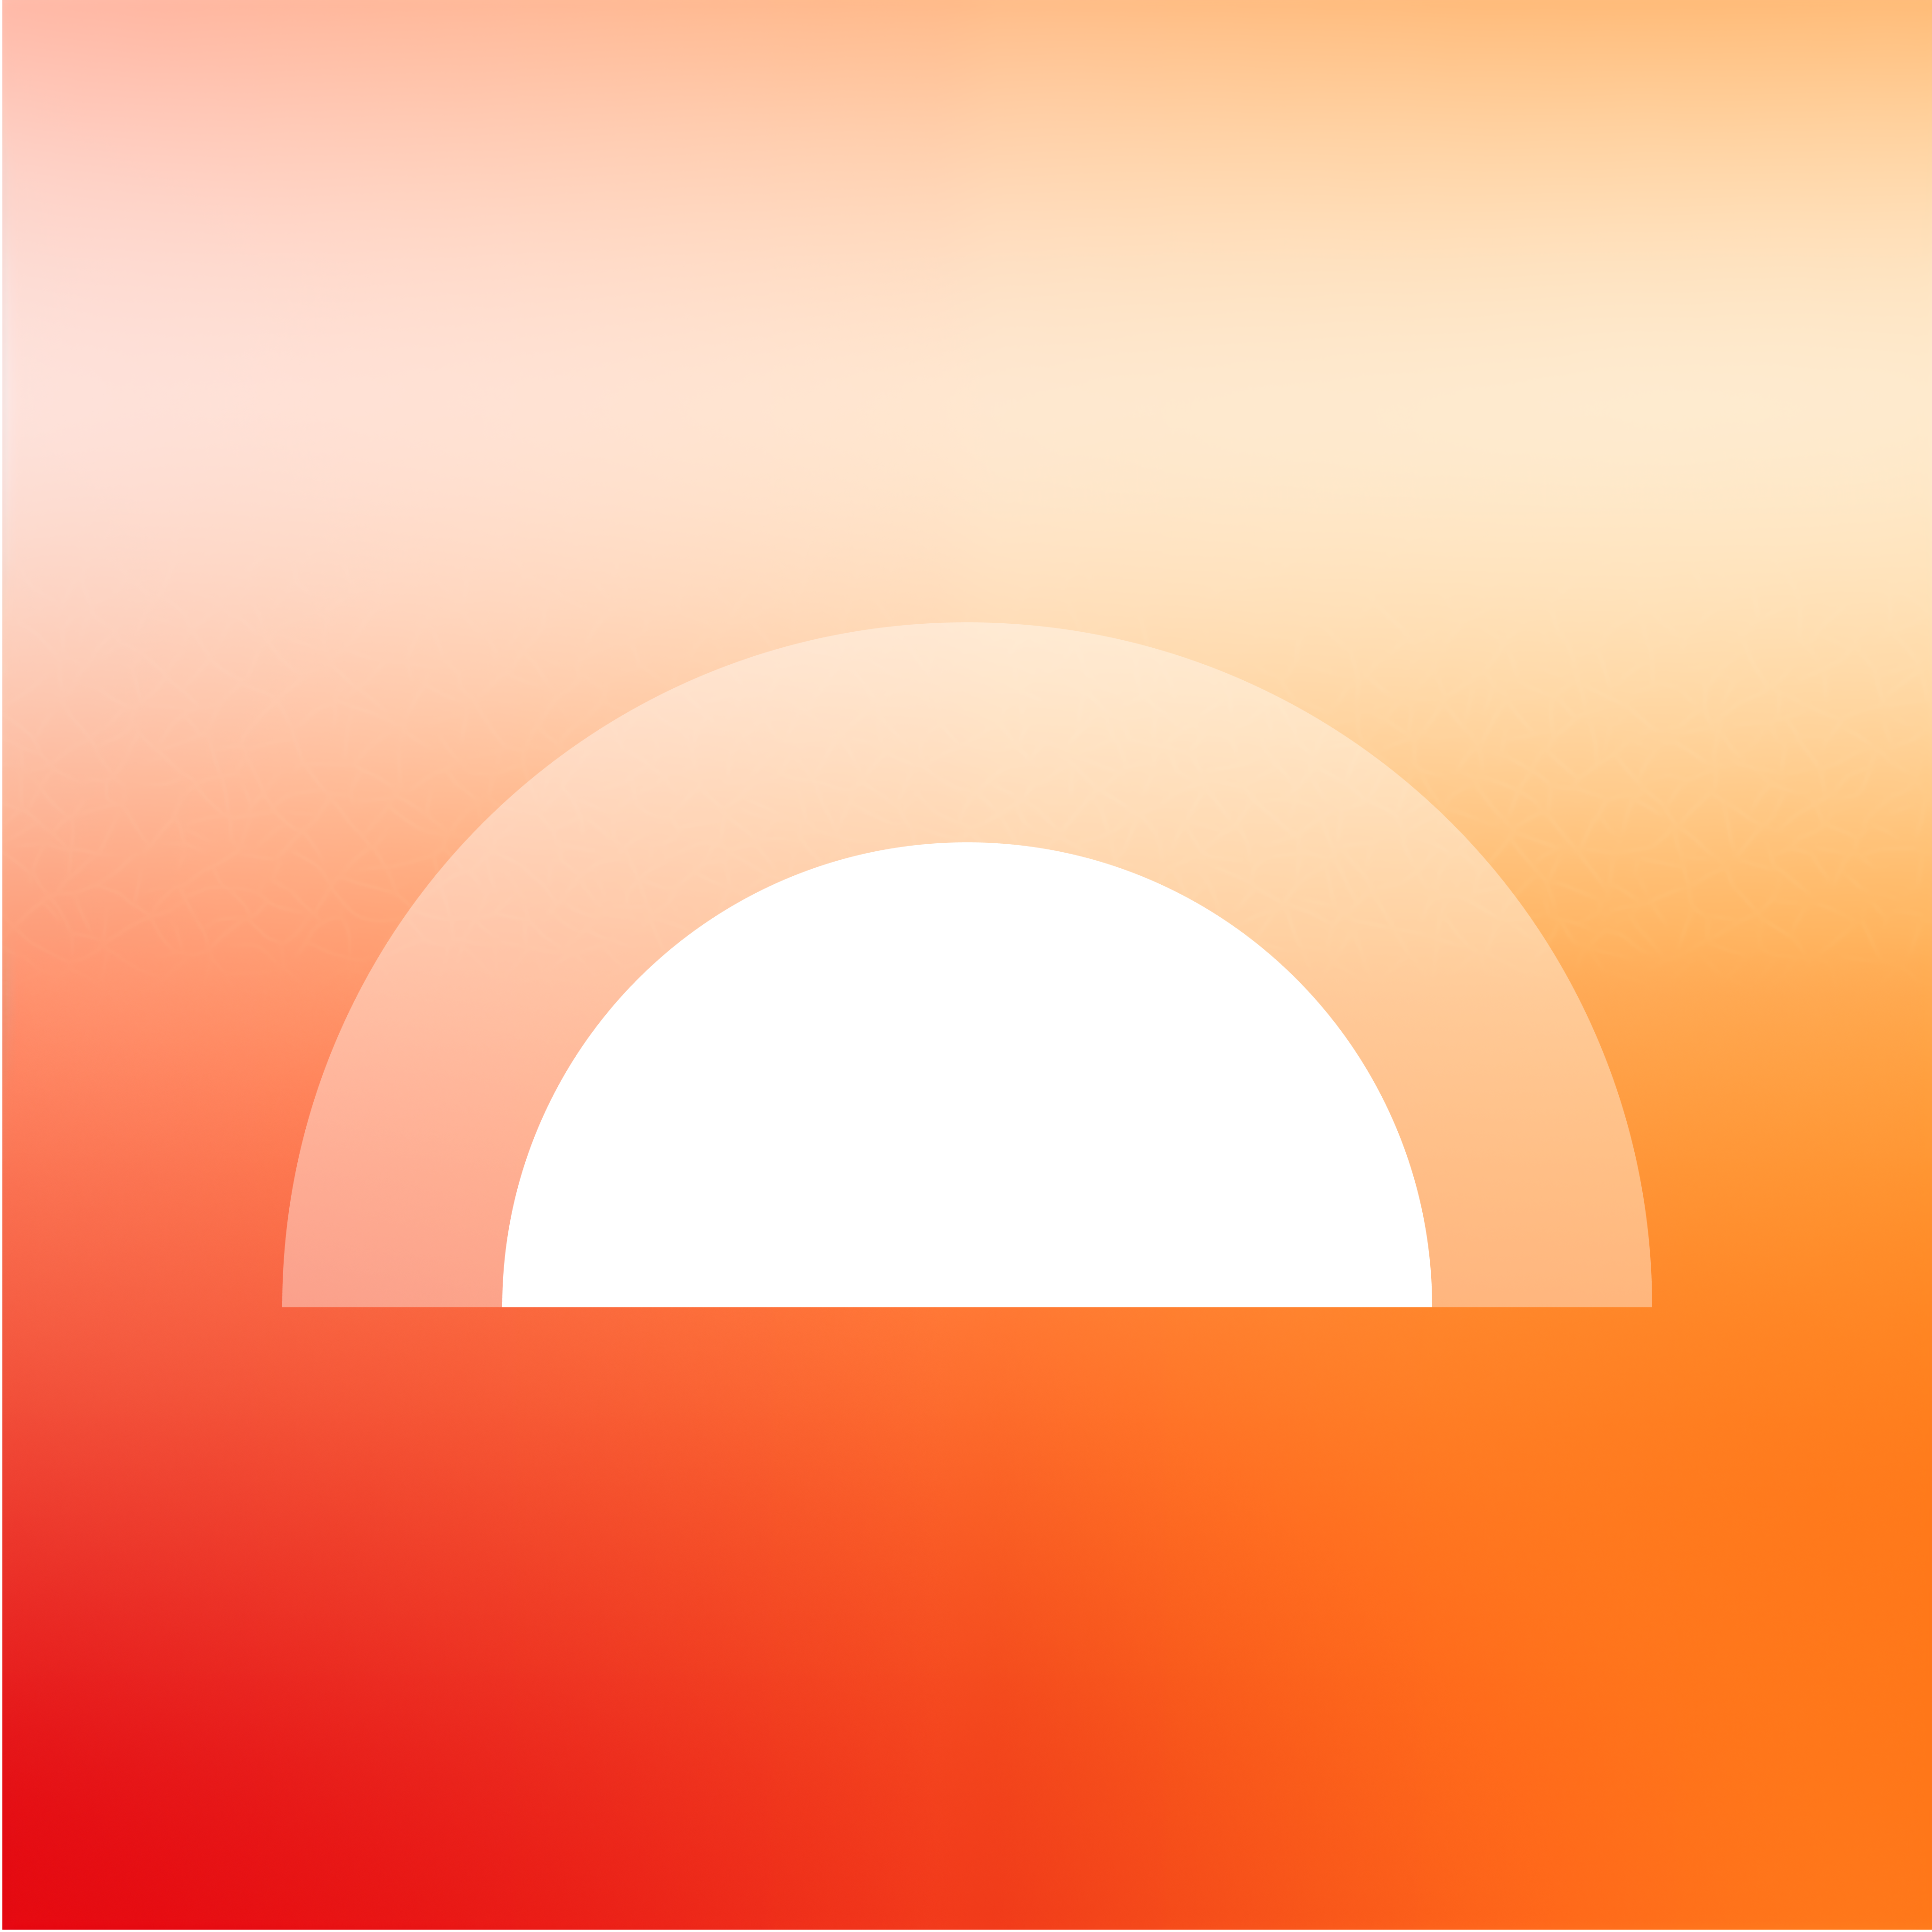 Sunny Days Ahead logo